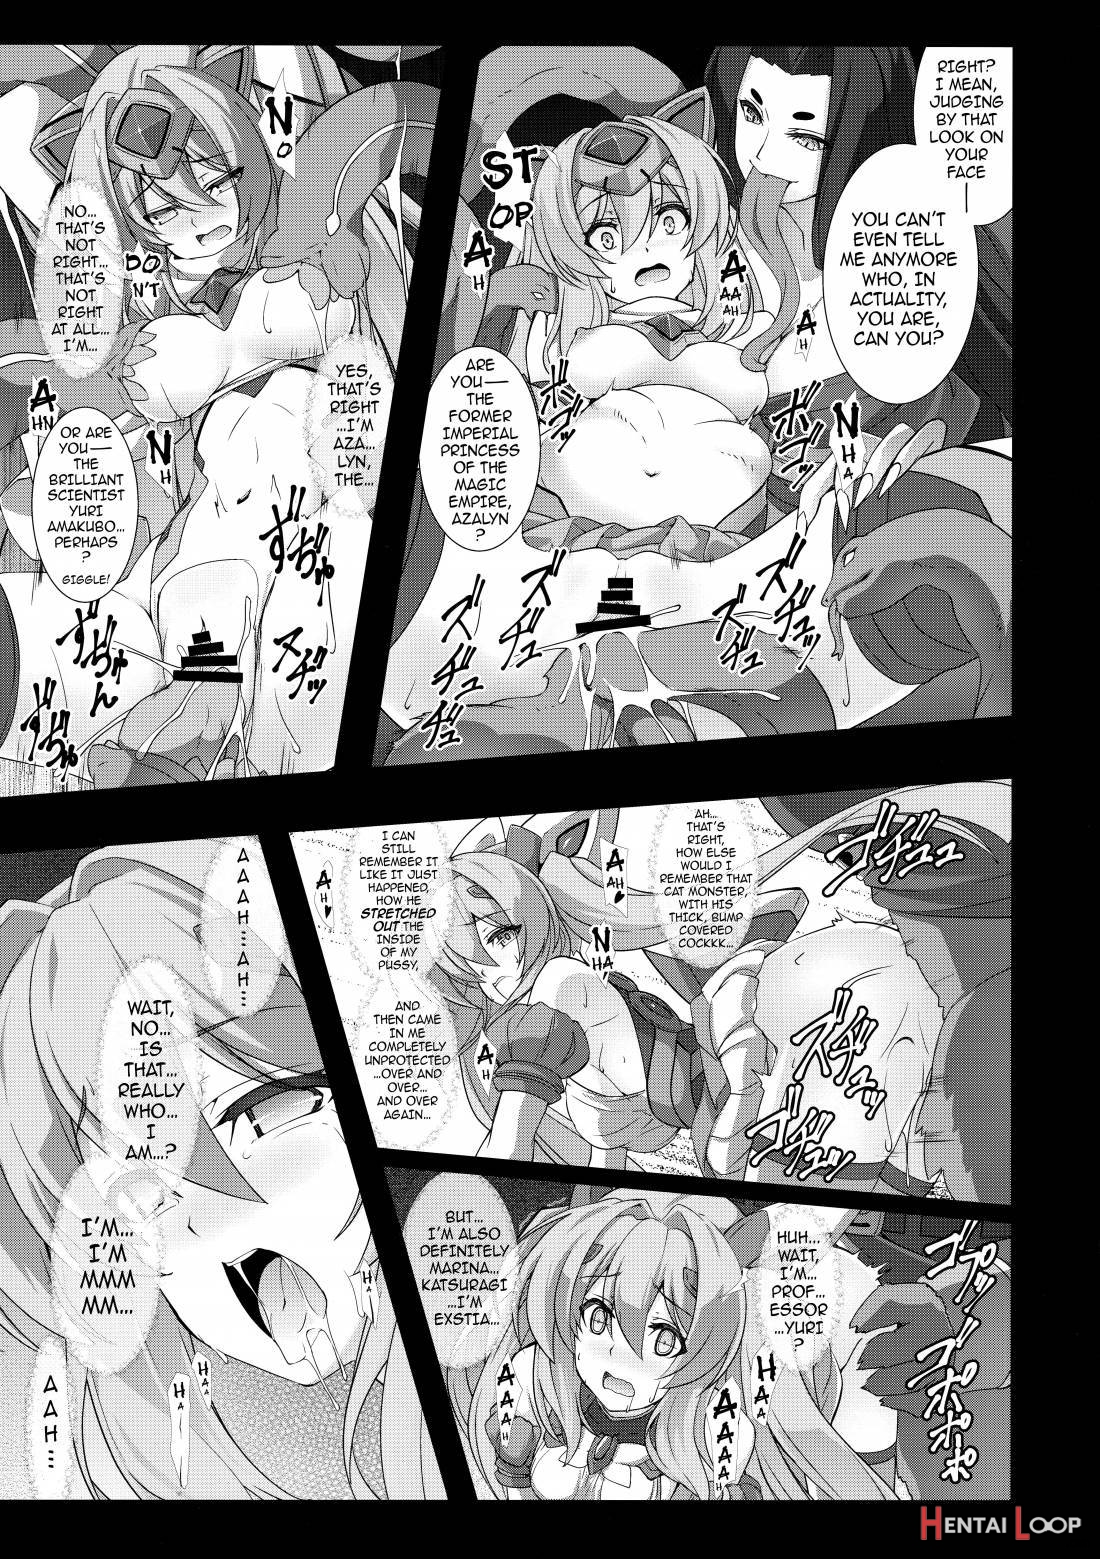 Kouyoku No. page 7